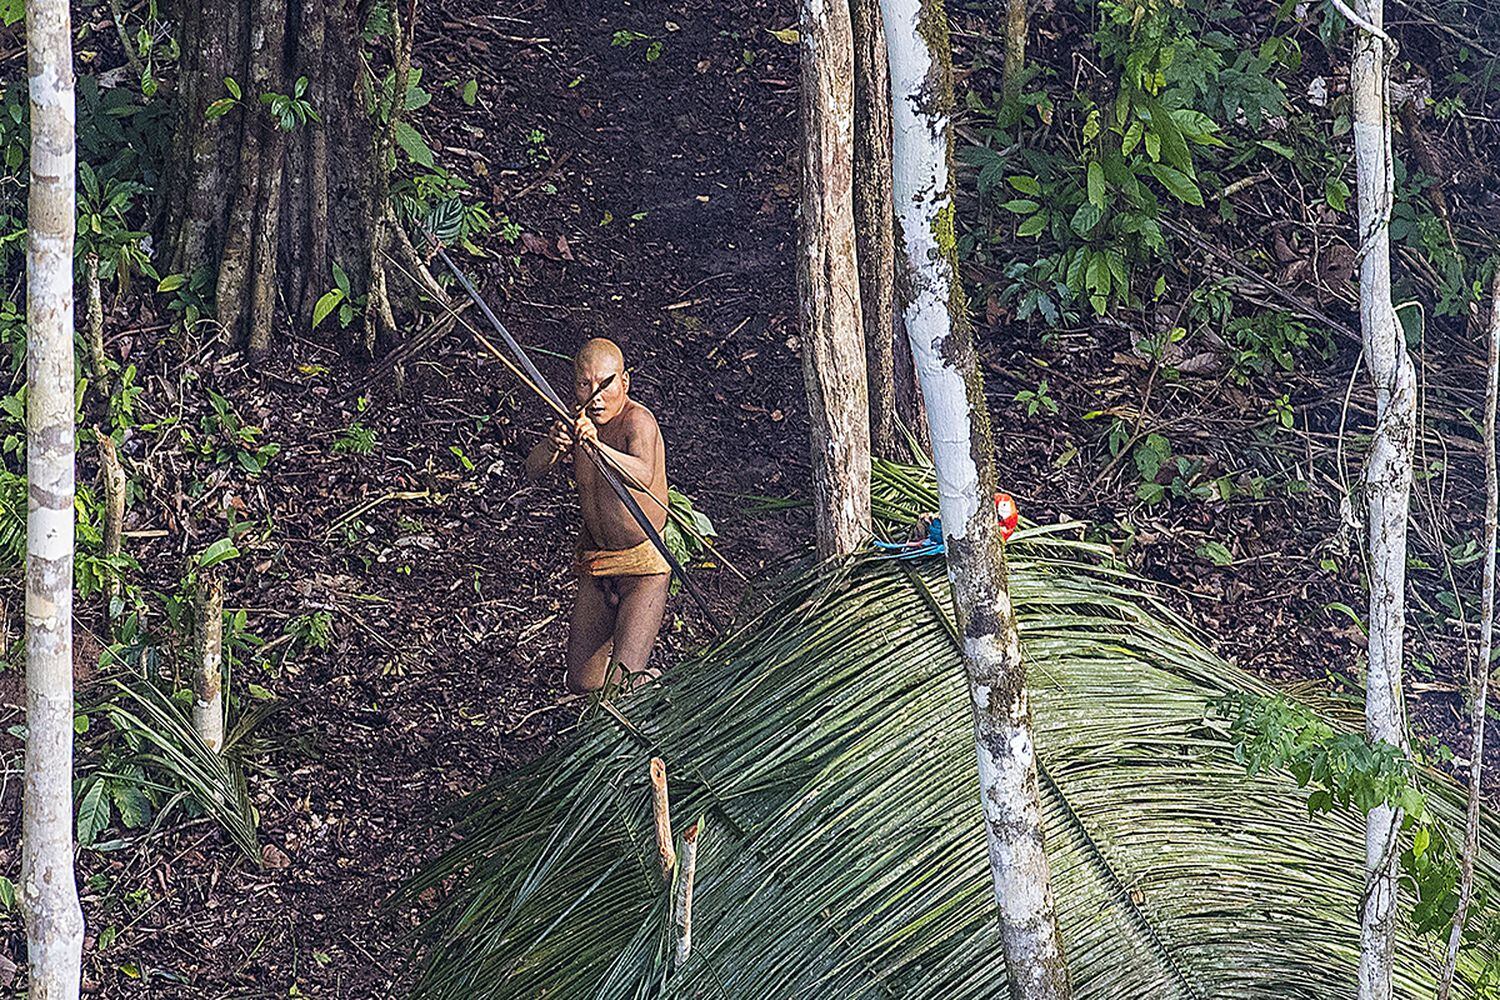 Uno de los indígenas aislados fotografiados en Acre en 2016 durante un sobrevuelo. Miembros de ese mismo pueblo han visitado ahora una aldea en esa región de la Amazonia brasileña fronteriza con Perú.